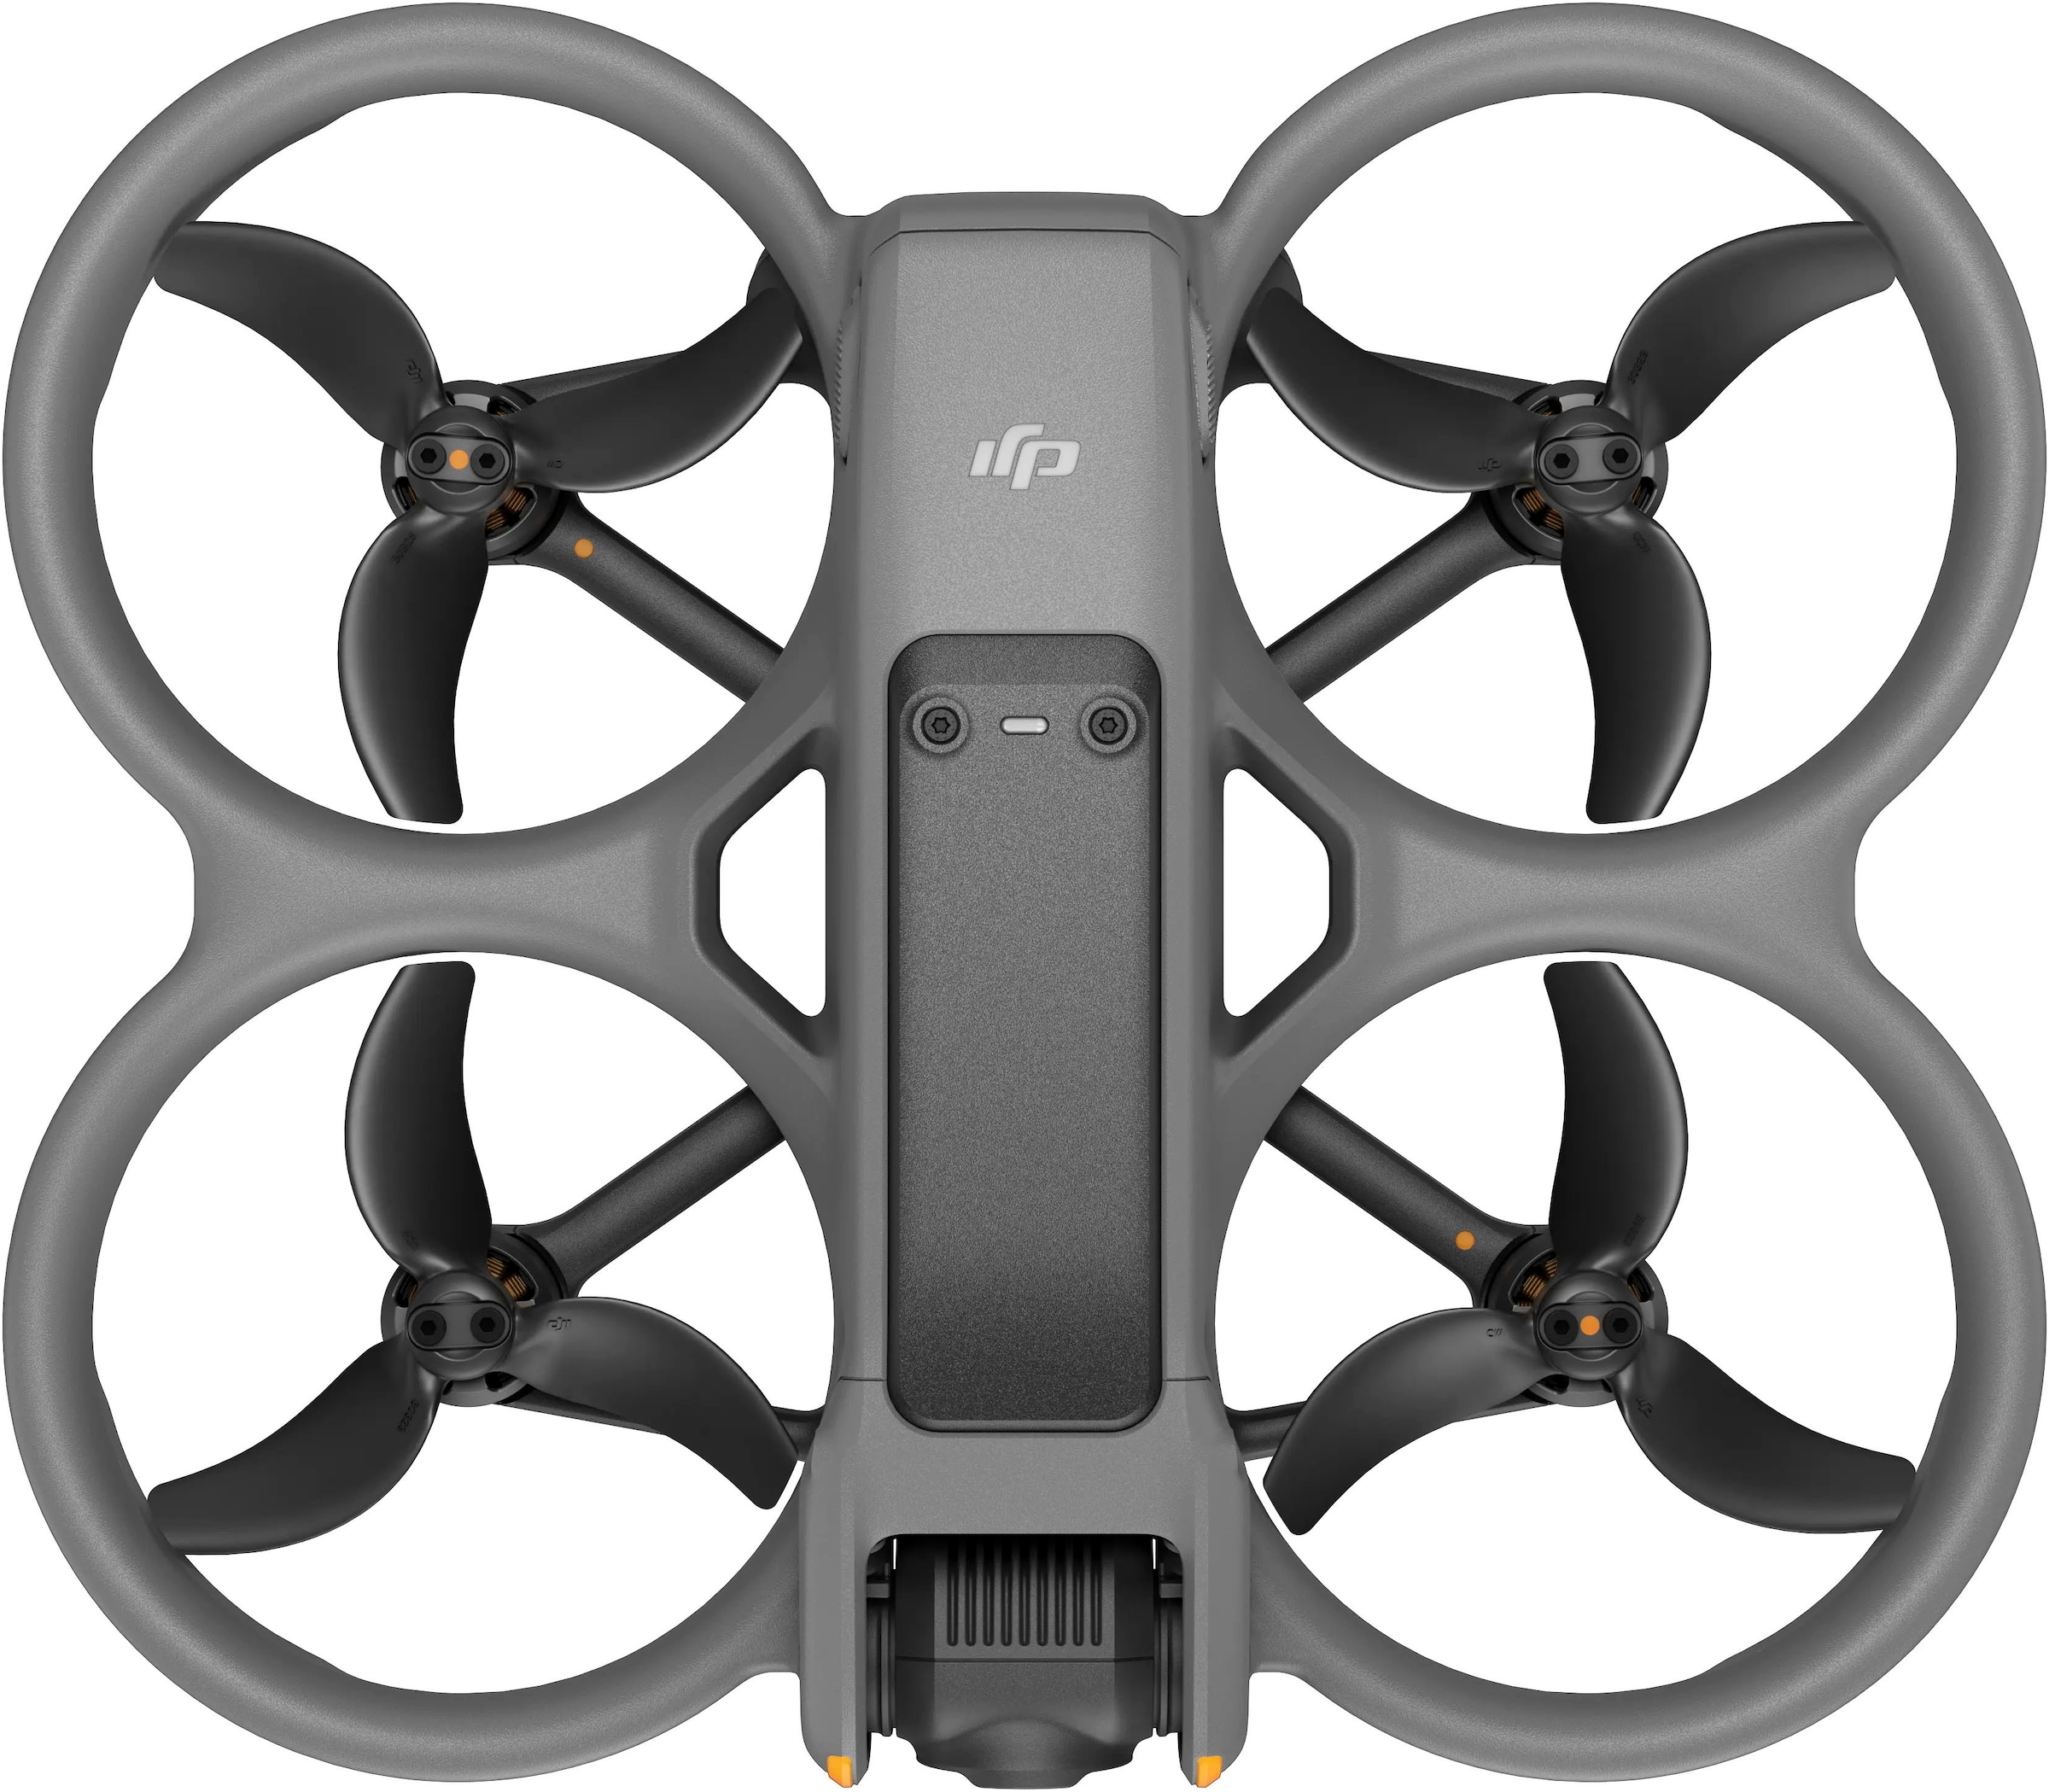 DJI Drohne »Avata 2«, Three Batteries